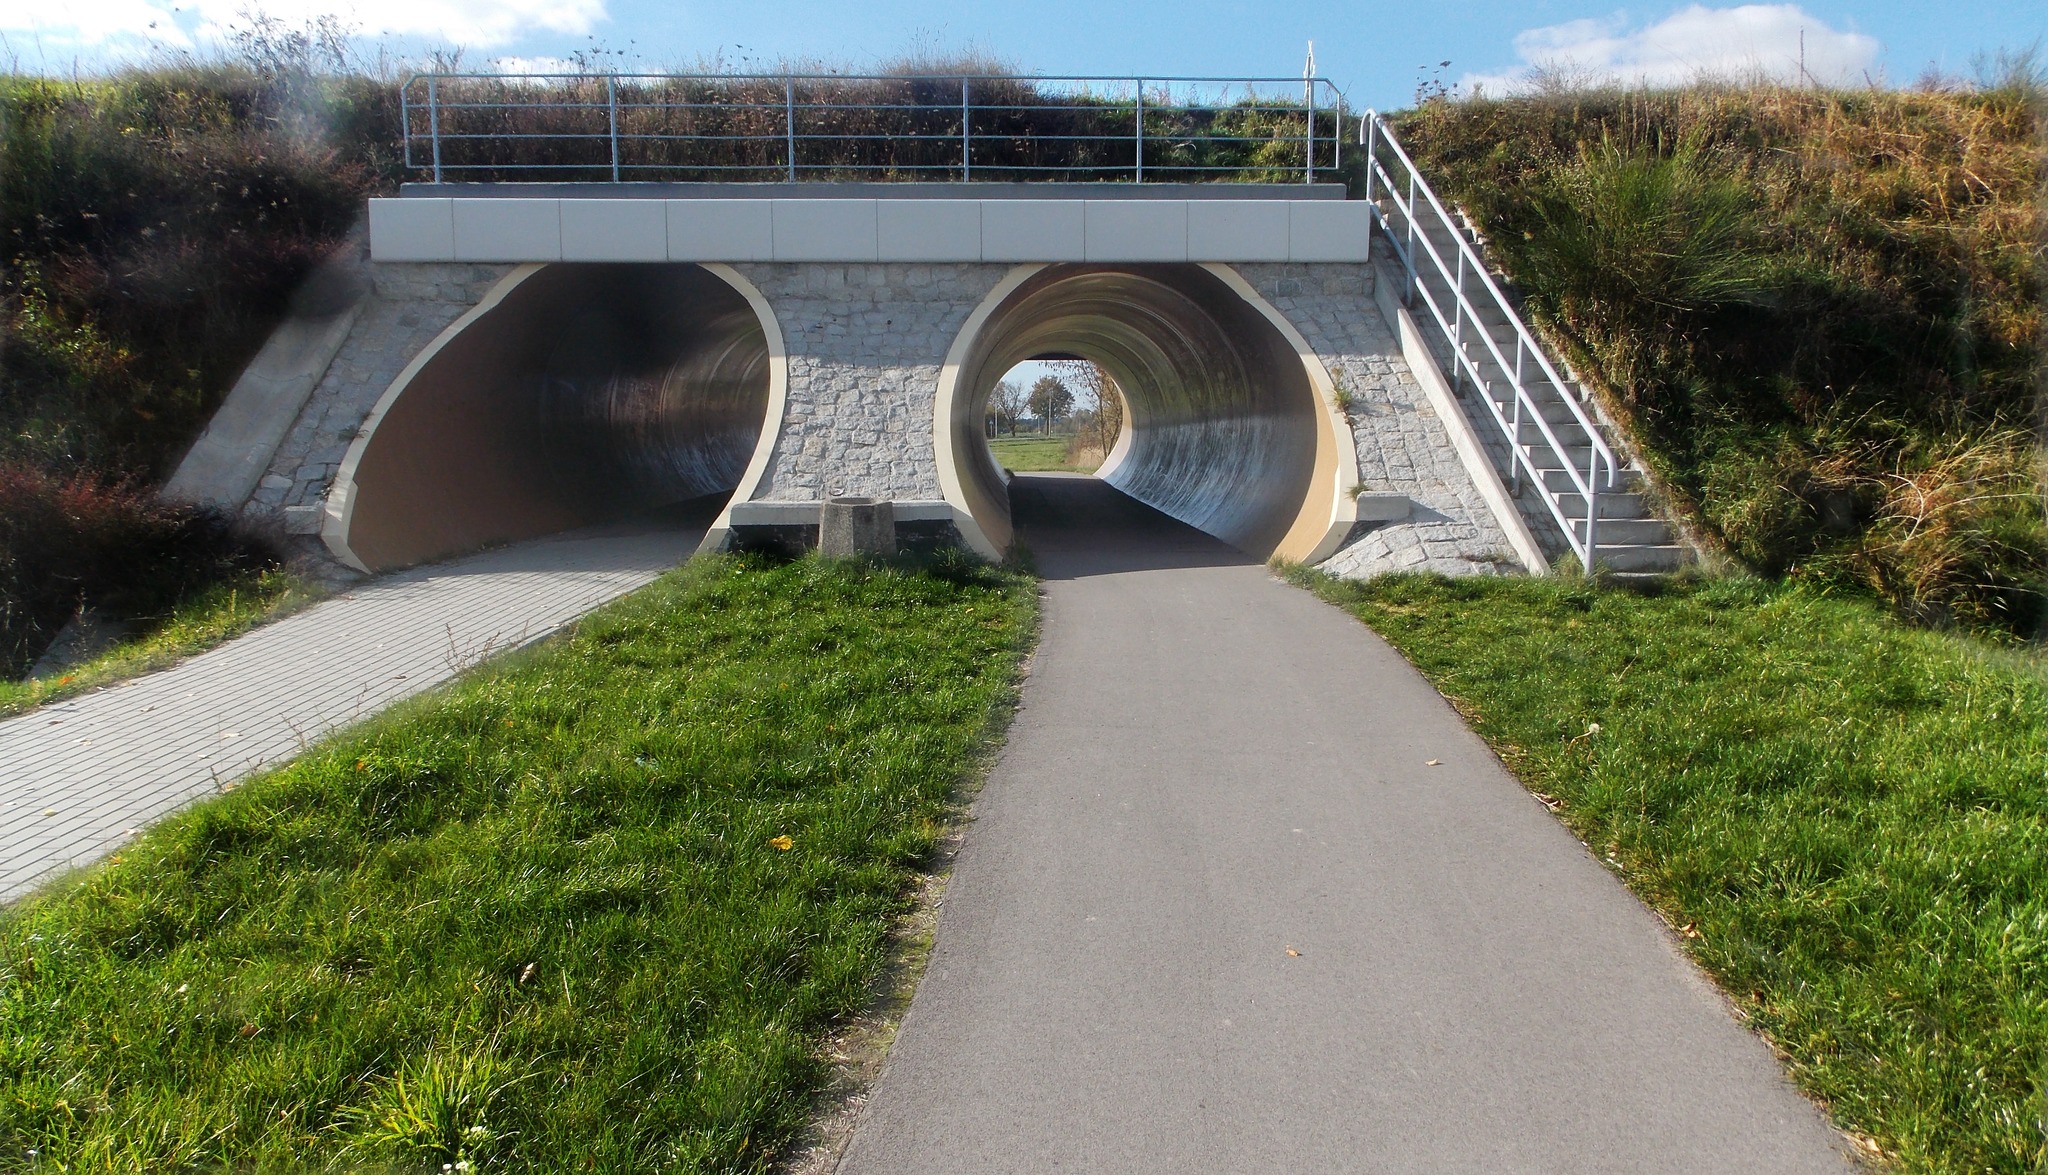 Zdjęcie przedstawia ścieżkę rowerową i ciąg pieszo-rowerowy zbudowany tuż obok drogi wojewódzkiej numer 815 z Parczewa do Lubartowa. Przebiegają one pod torami kolejowymi i znajdują się w tunelu.